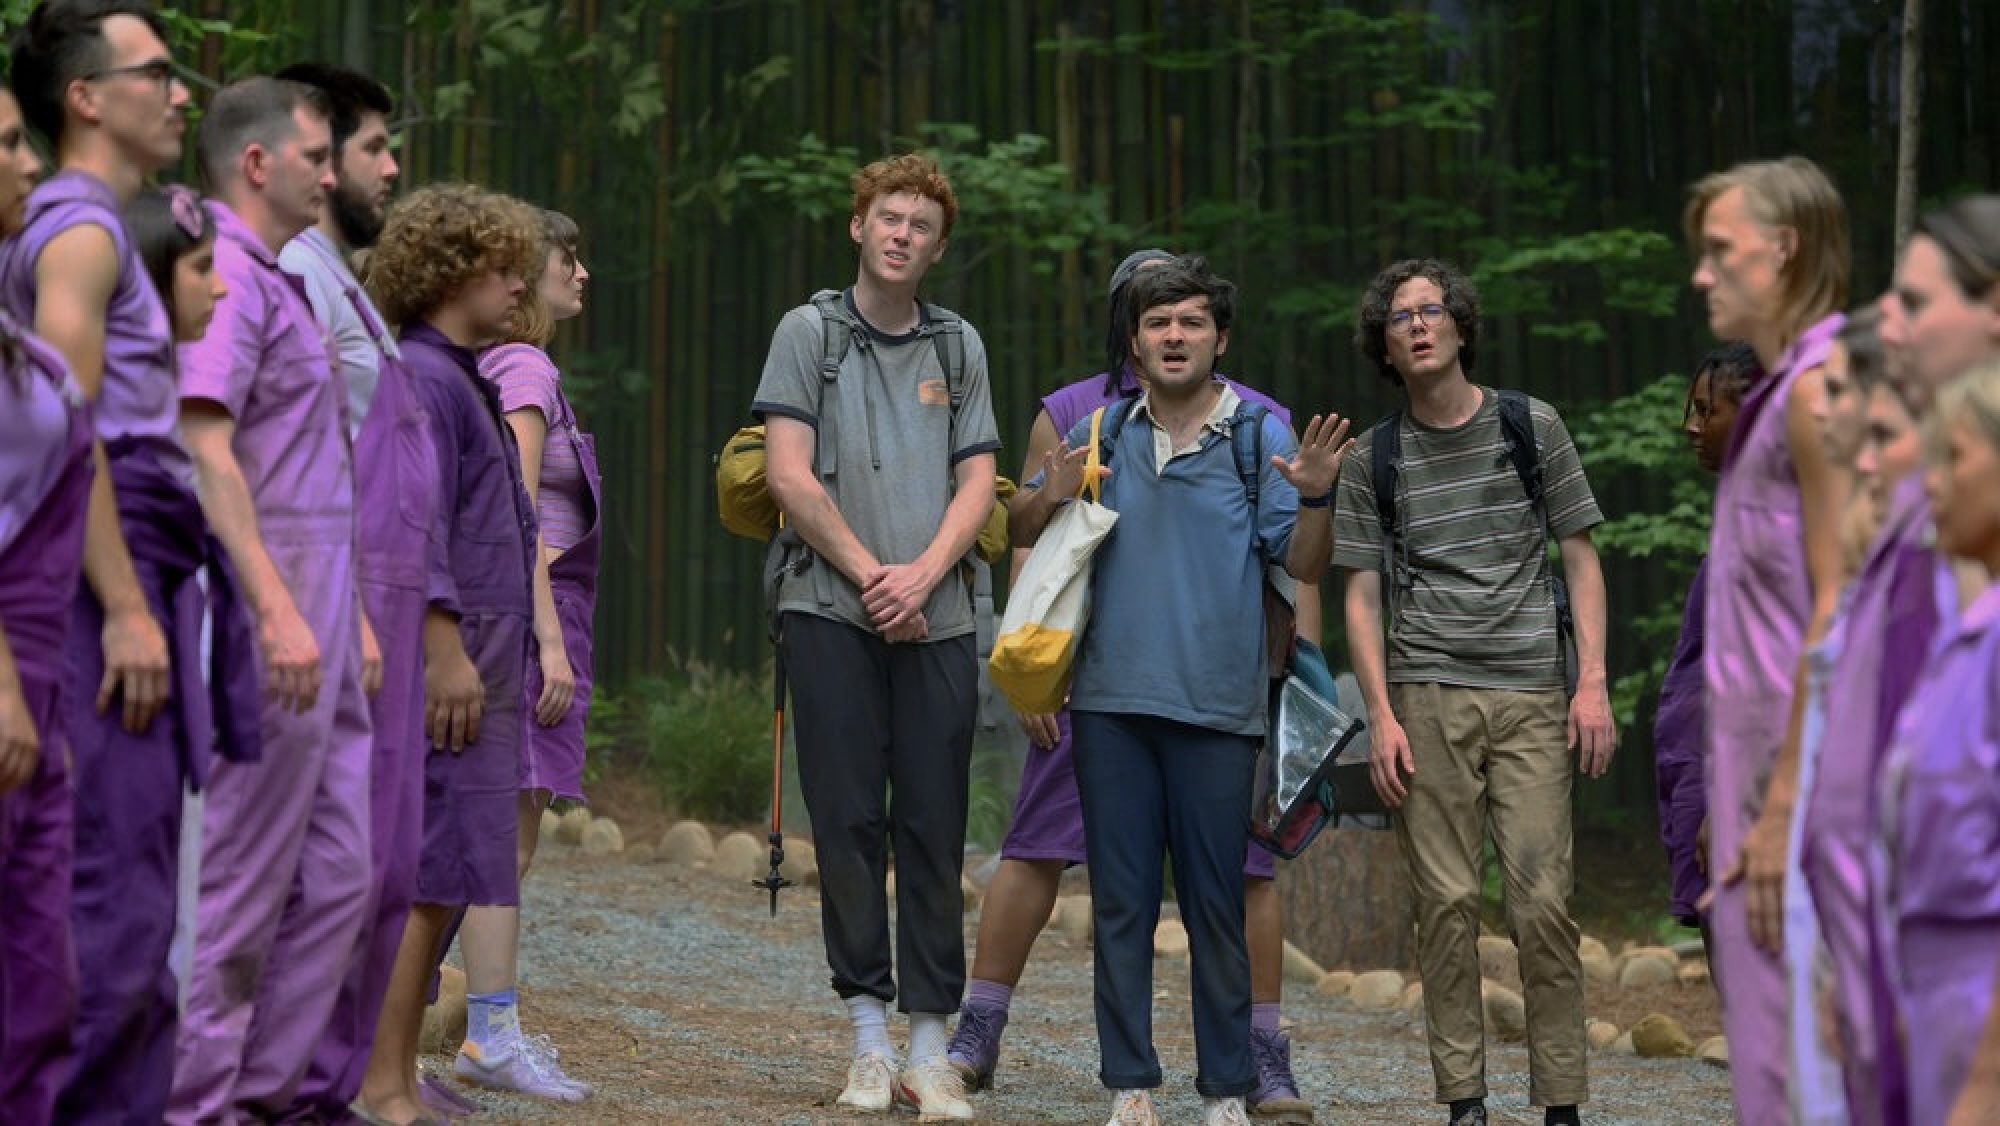 Trois jeunes hommes en tenue de randonnée traversent une foule de personnes vêtues de vêtements violets.